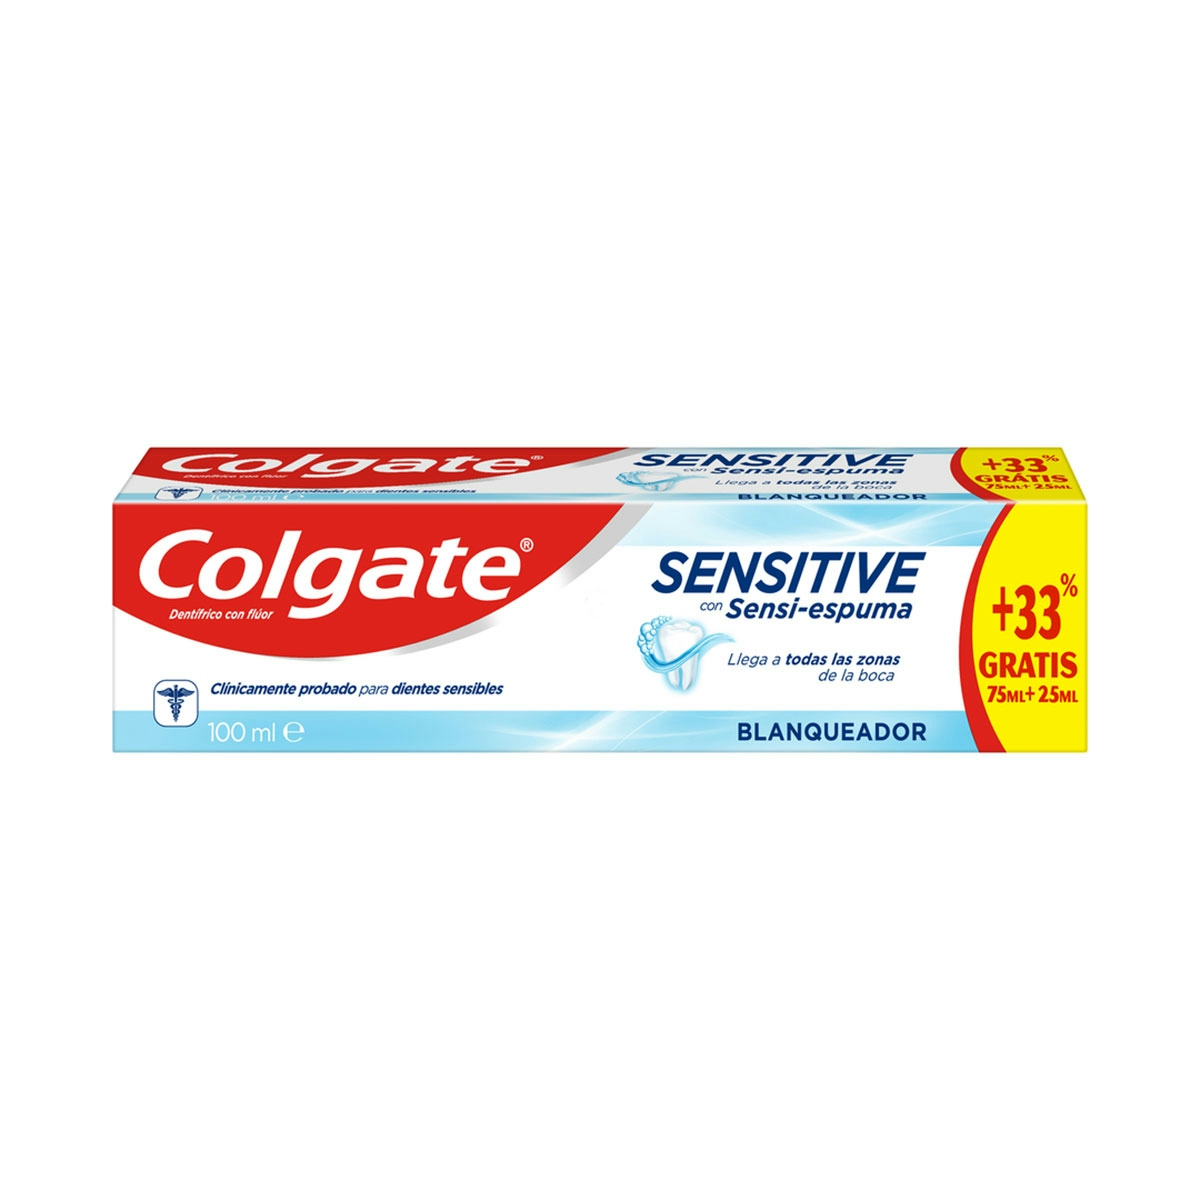 Pasta de dientes blanqueadora Colgate Sensitive con Sensi-espuma para dientes sensibles 100ml